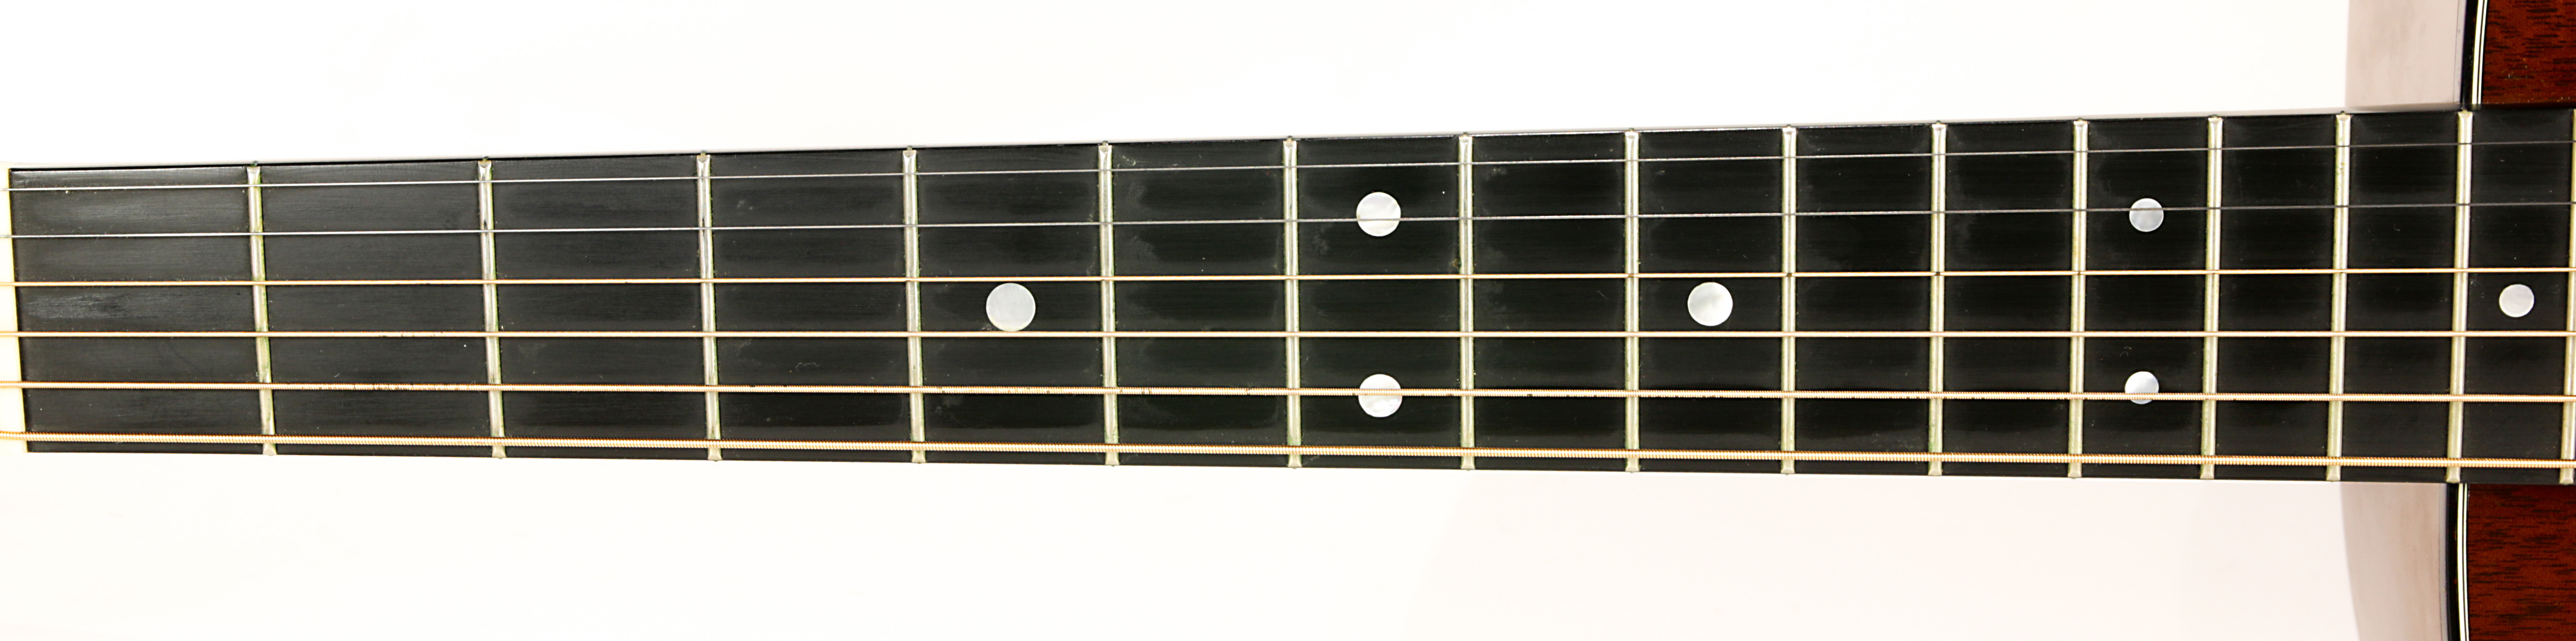 A Martin 2001 D17 guitar - Image 6 of 8